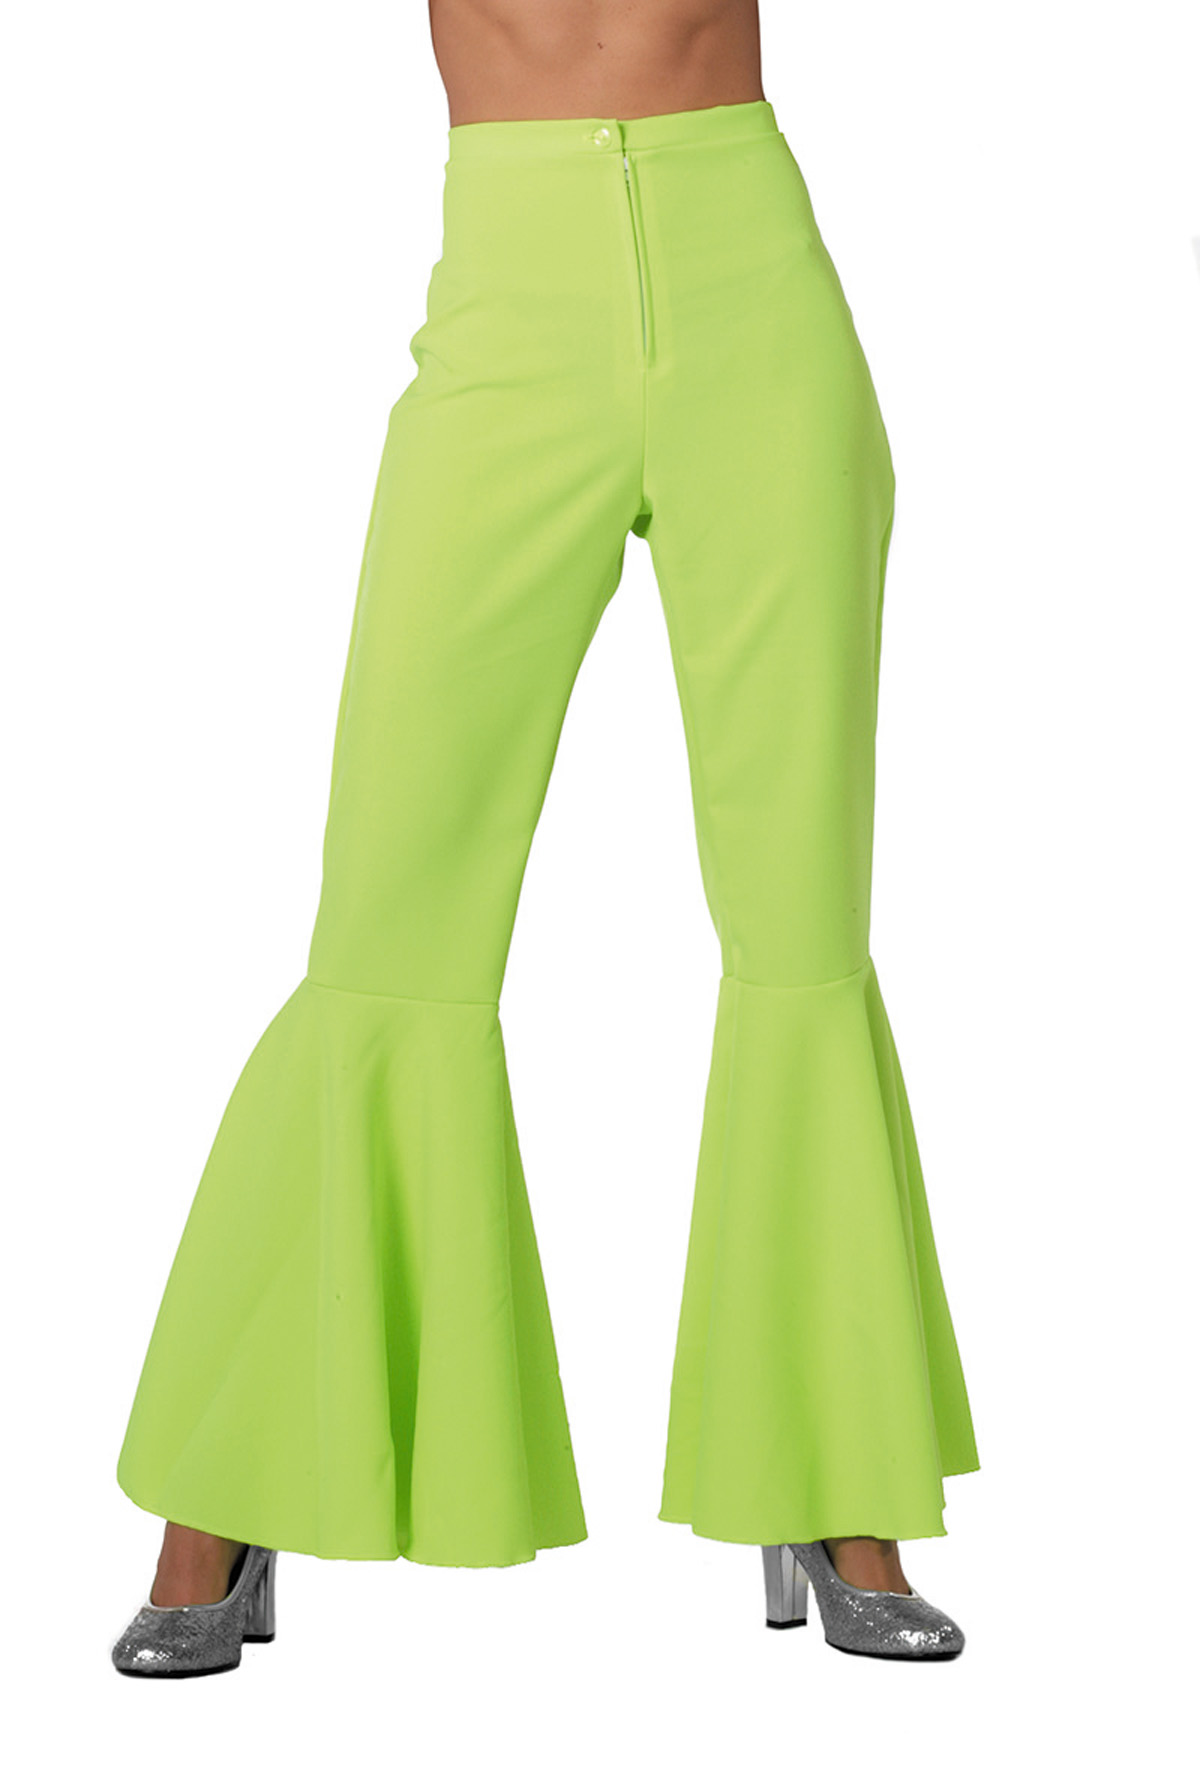 Hippie flared broek groen dames